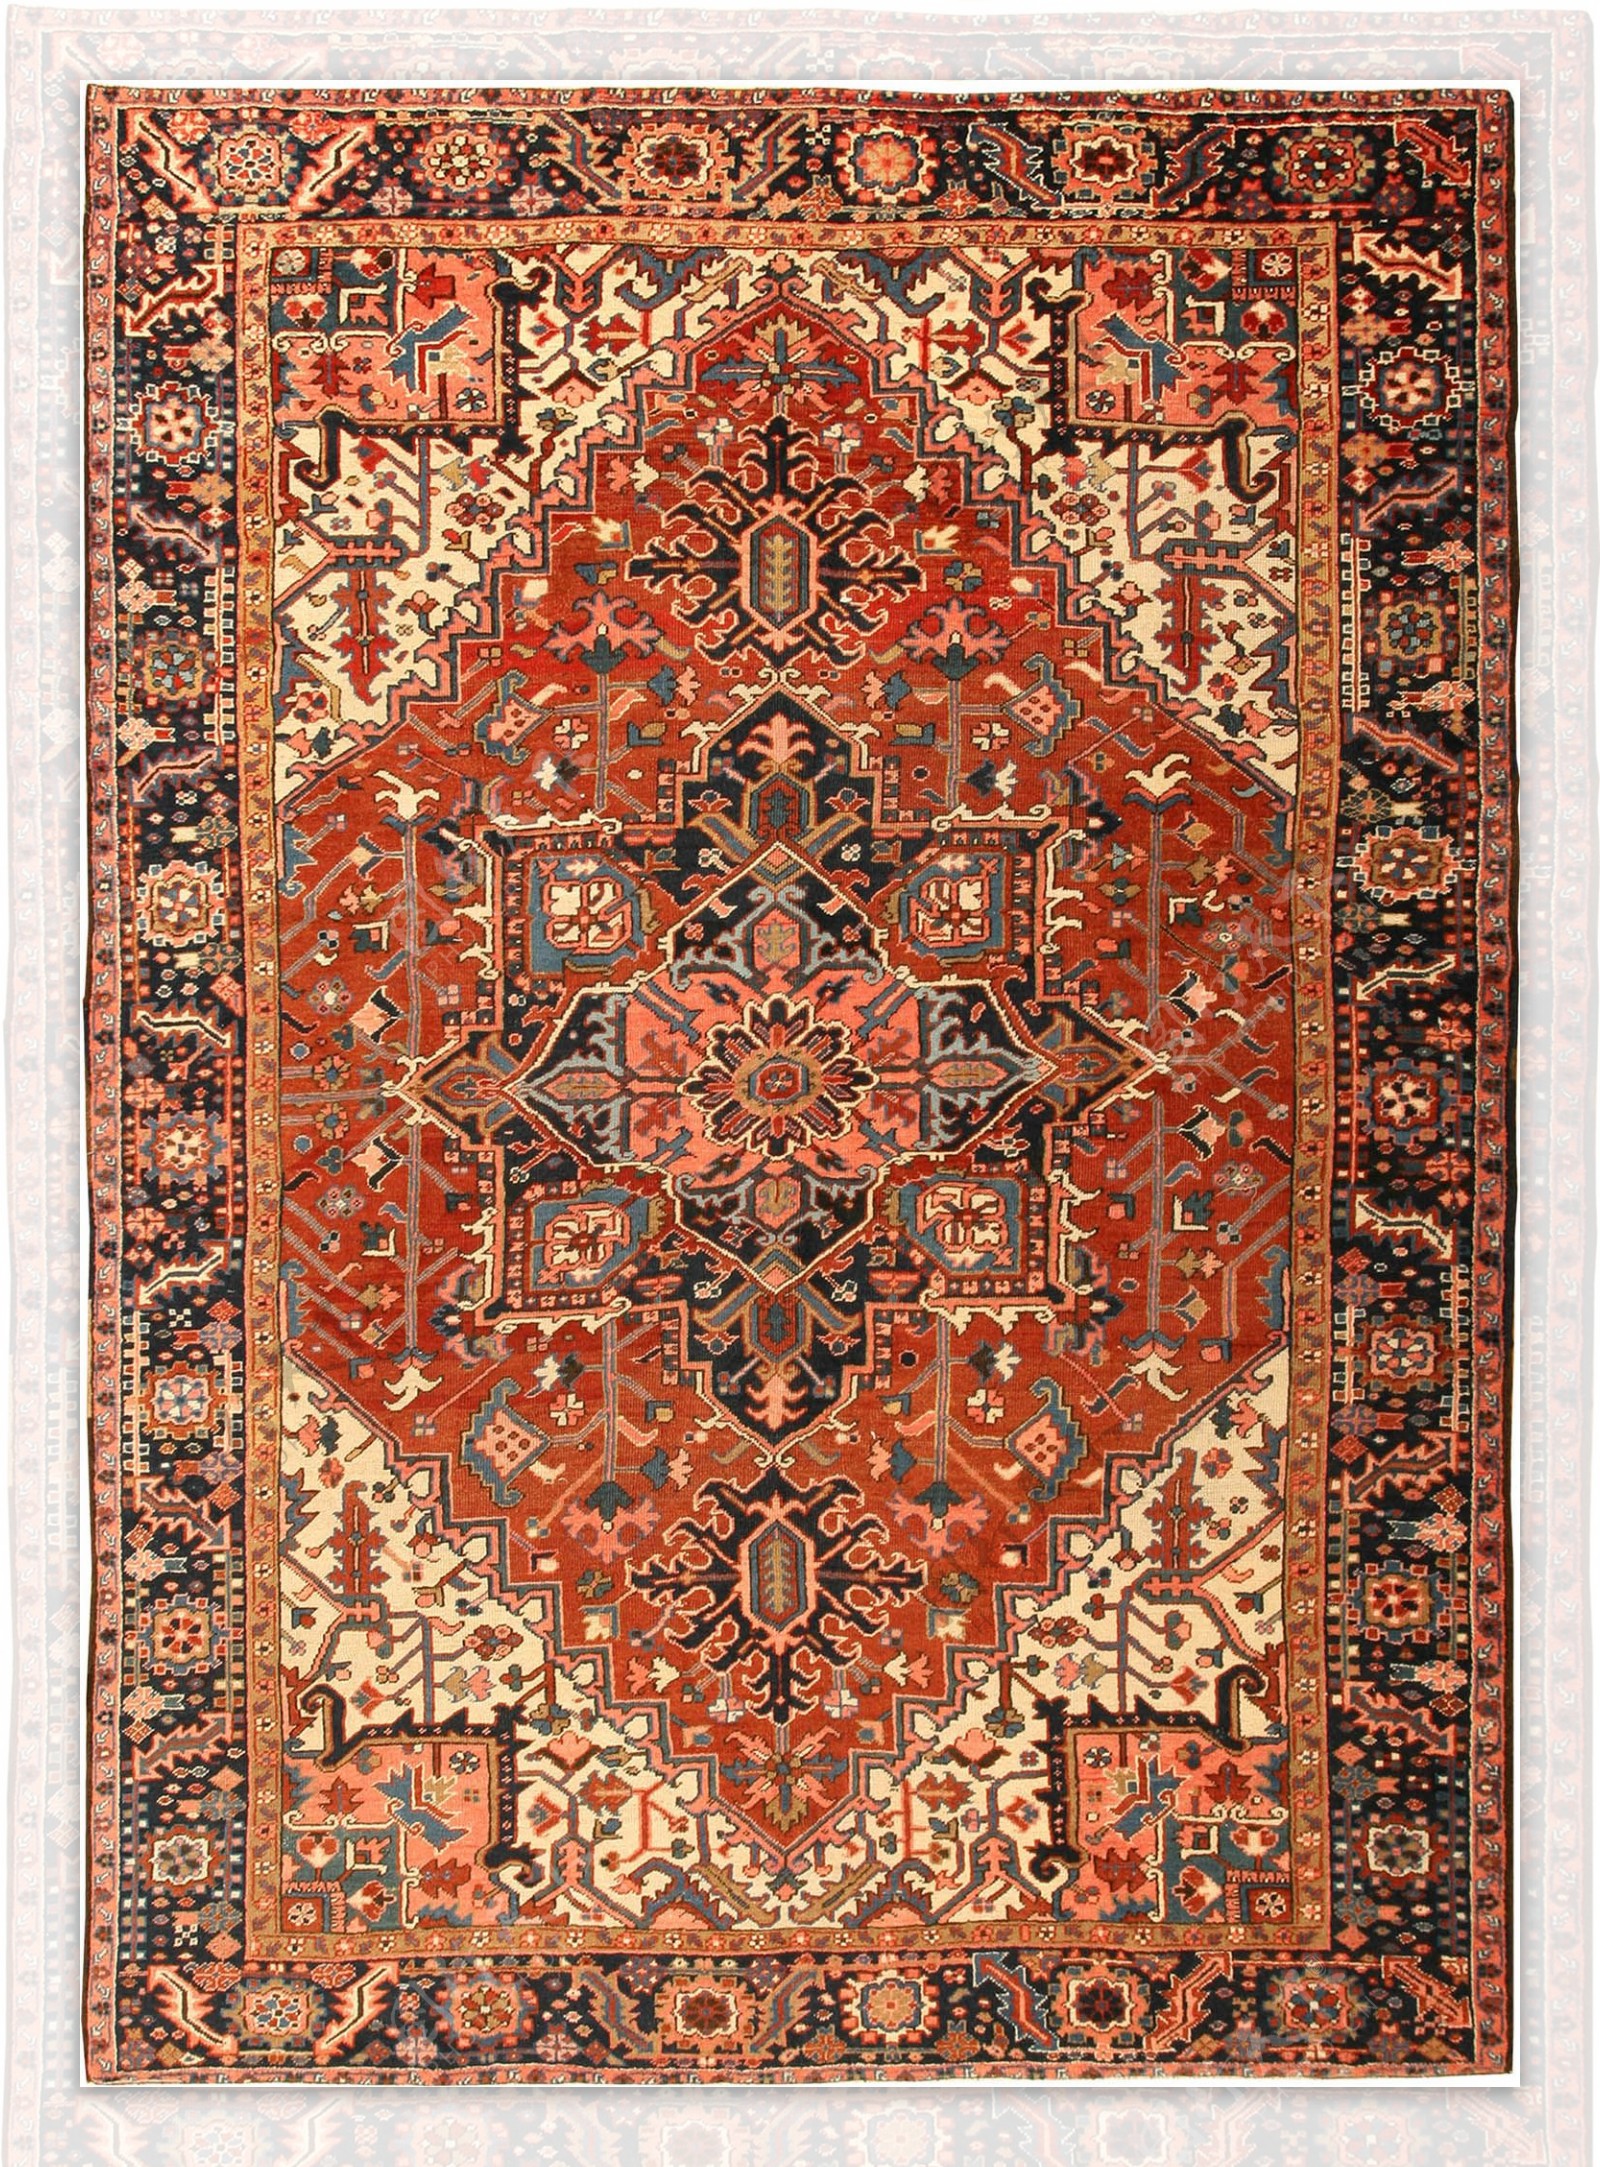 国外古典欧式地毯